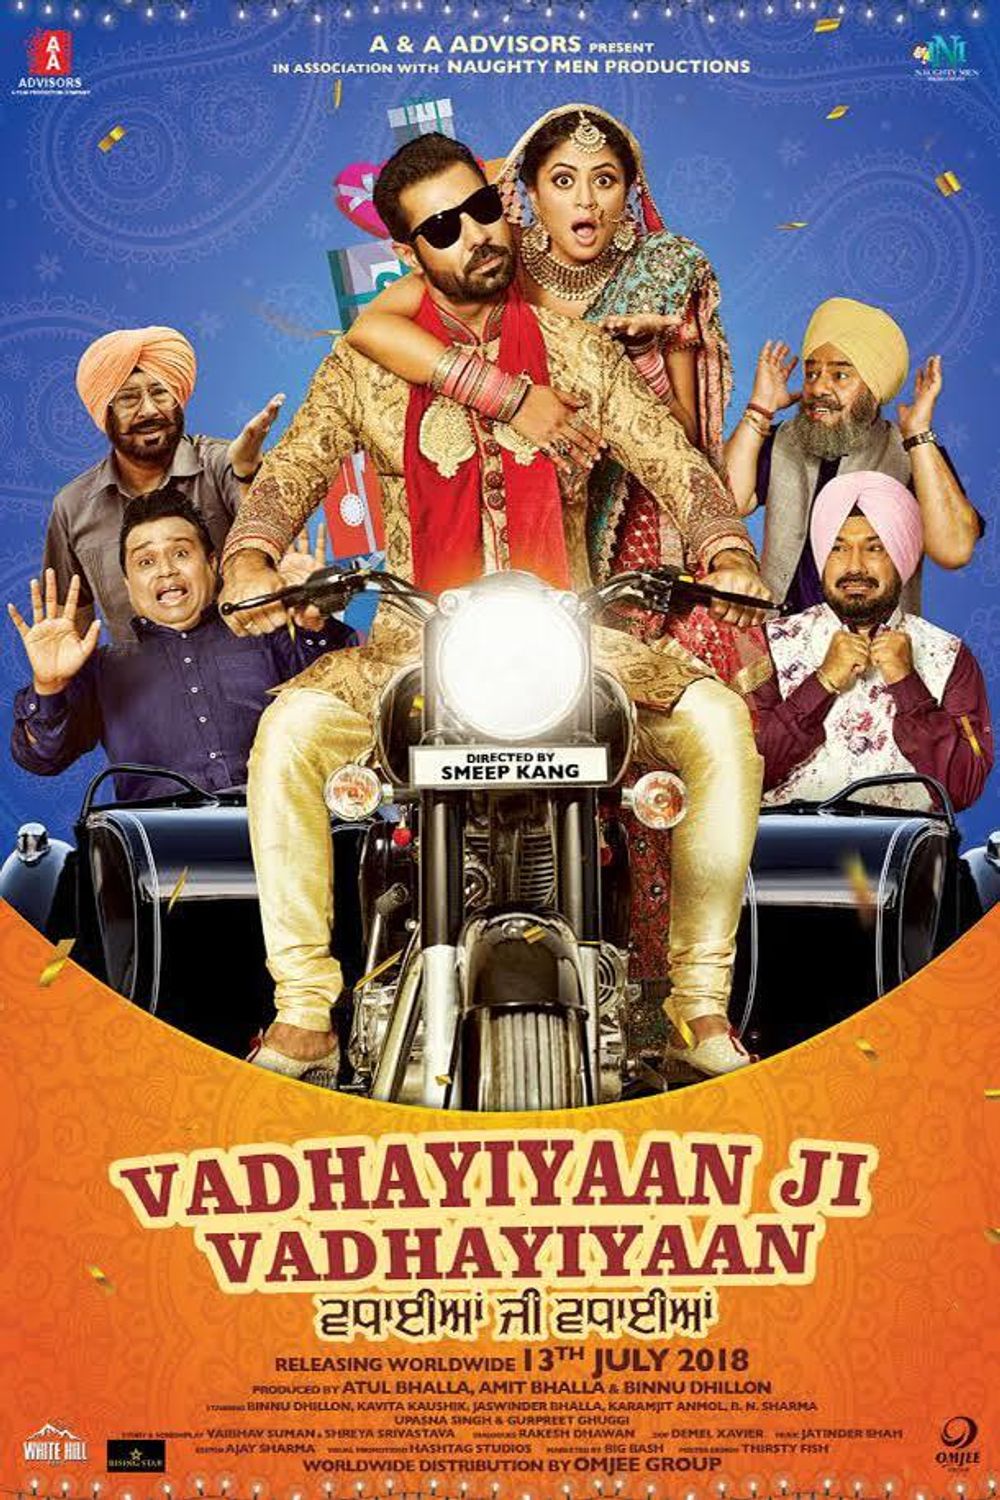 Vadhayiyaan Ji Vadhayiyaan Movie Photos